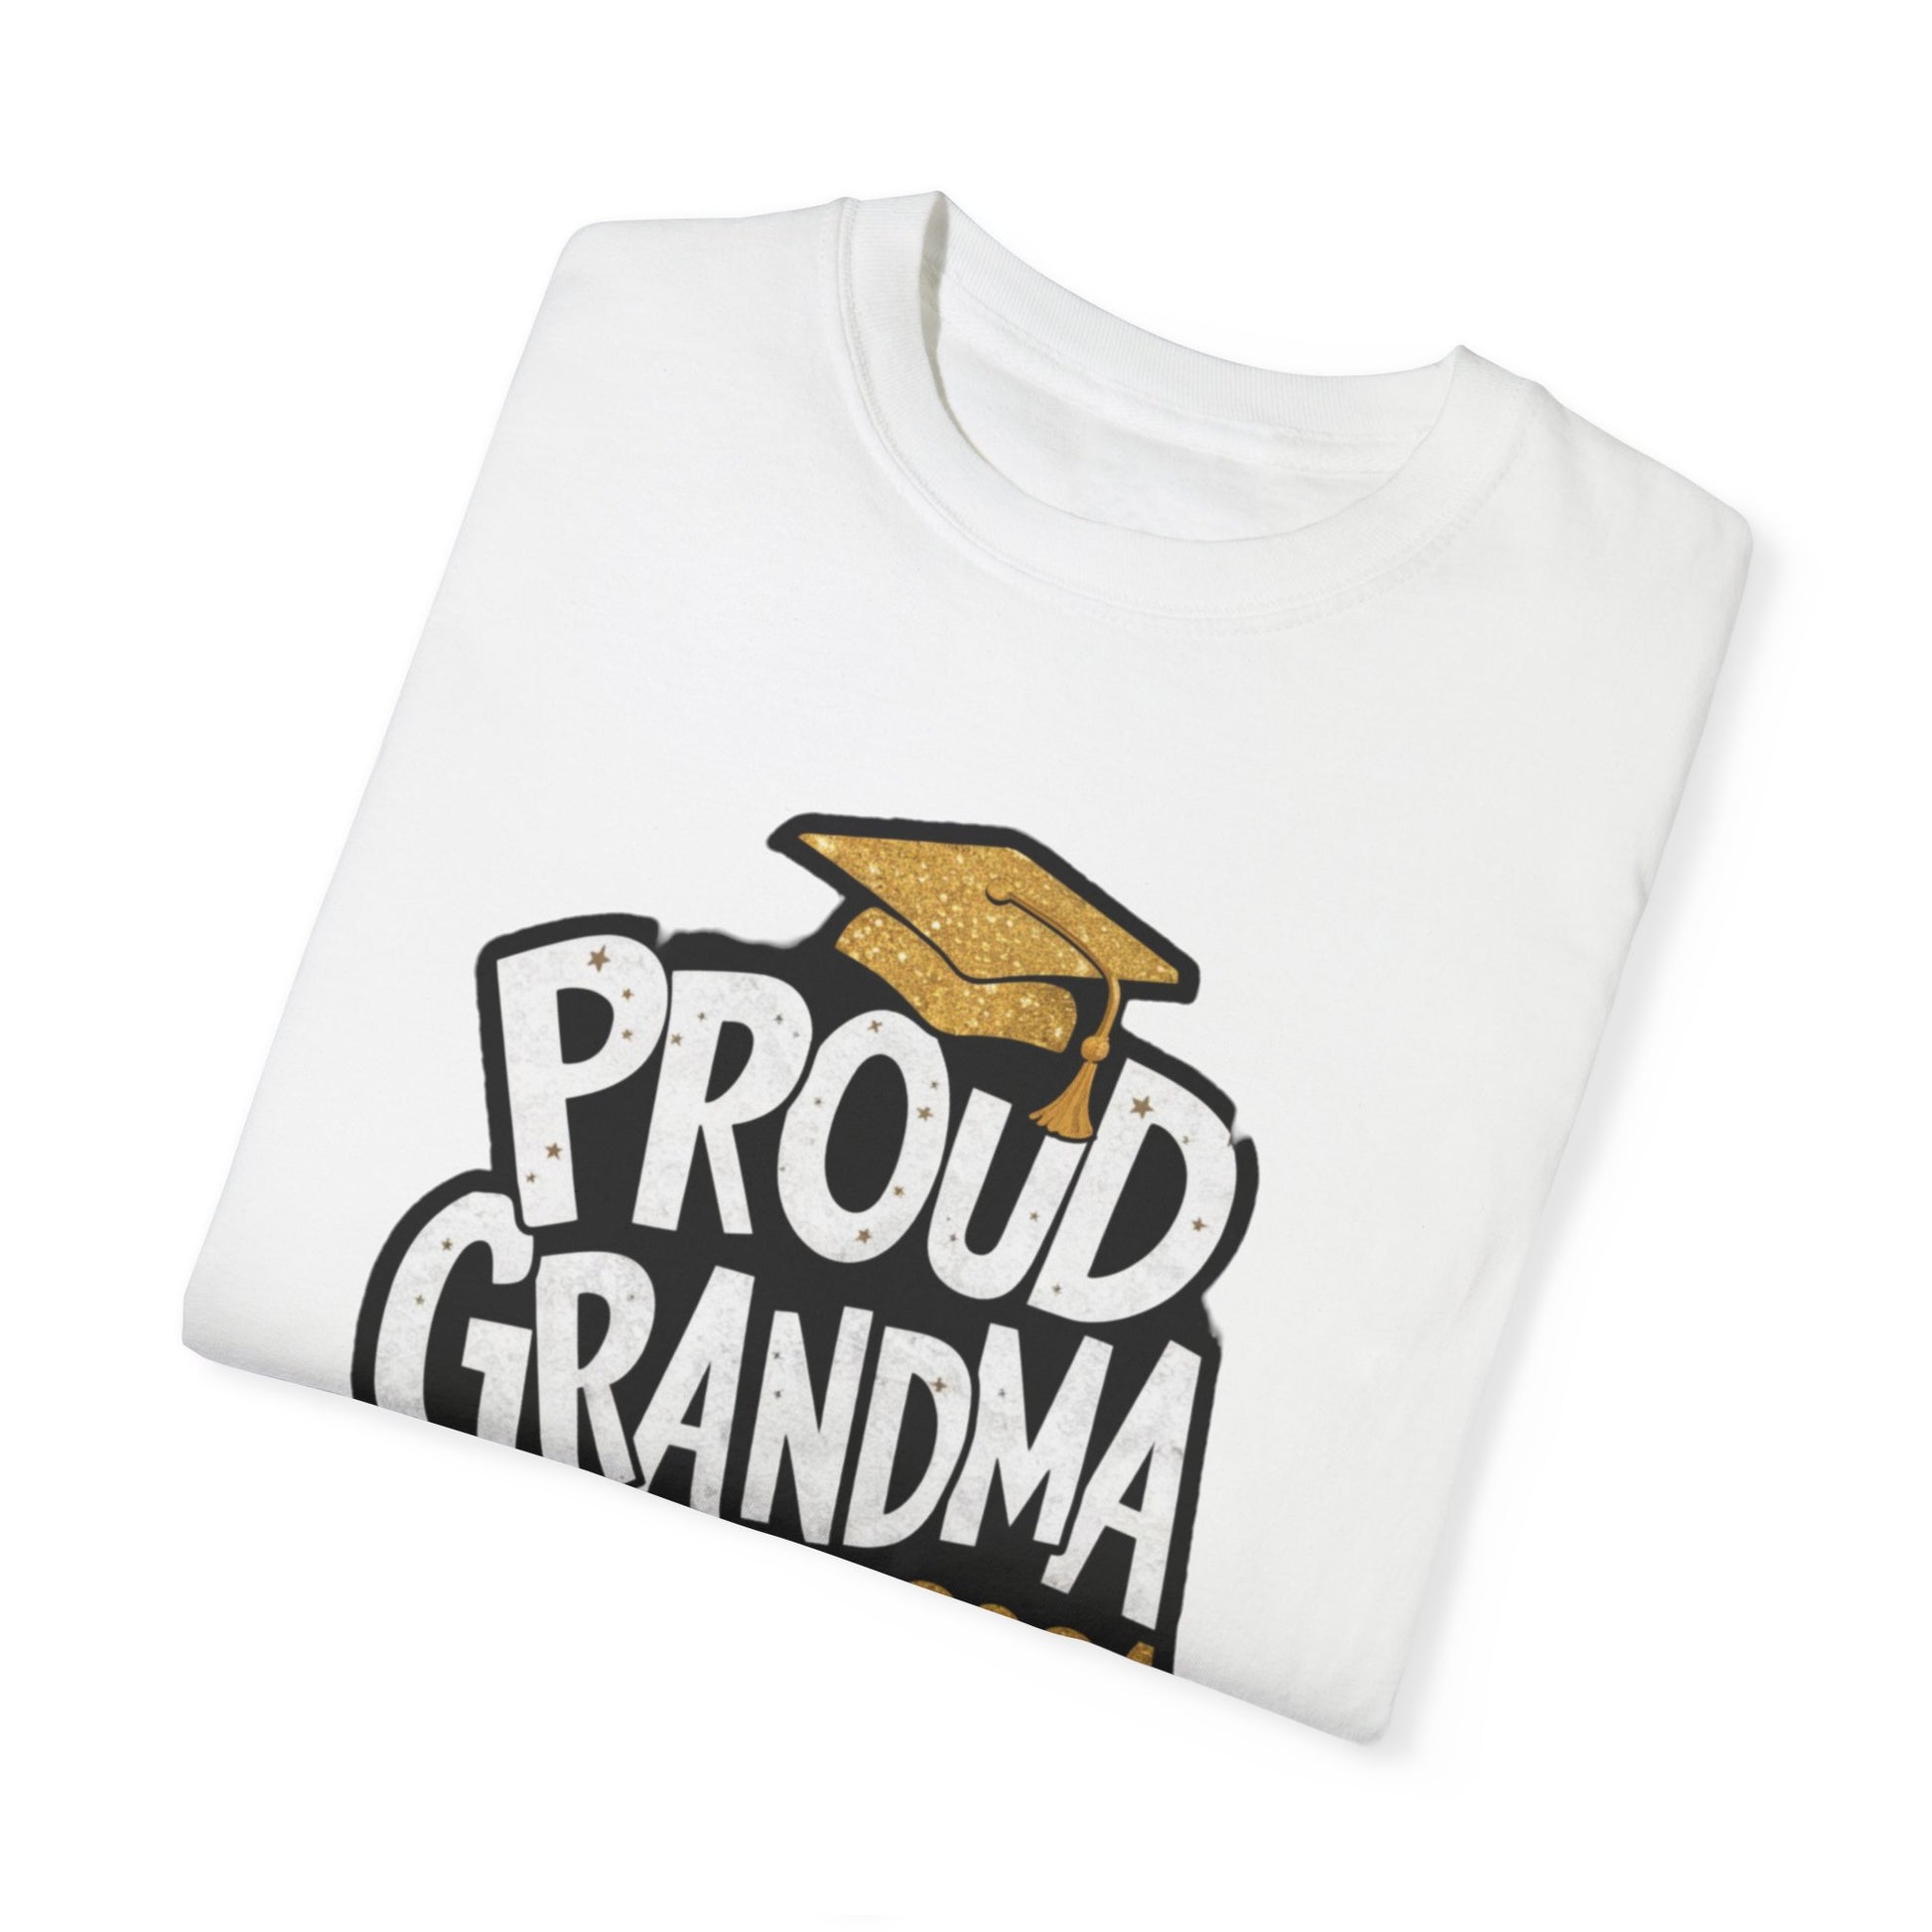 Proud of Grandma 2024 Graduate Unisex Garment-dyed T-shirt Cotton Funny Humorous Graphic Soft Premium Unisex Men Women White T-shirt Birthday Gift-23